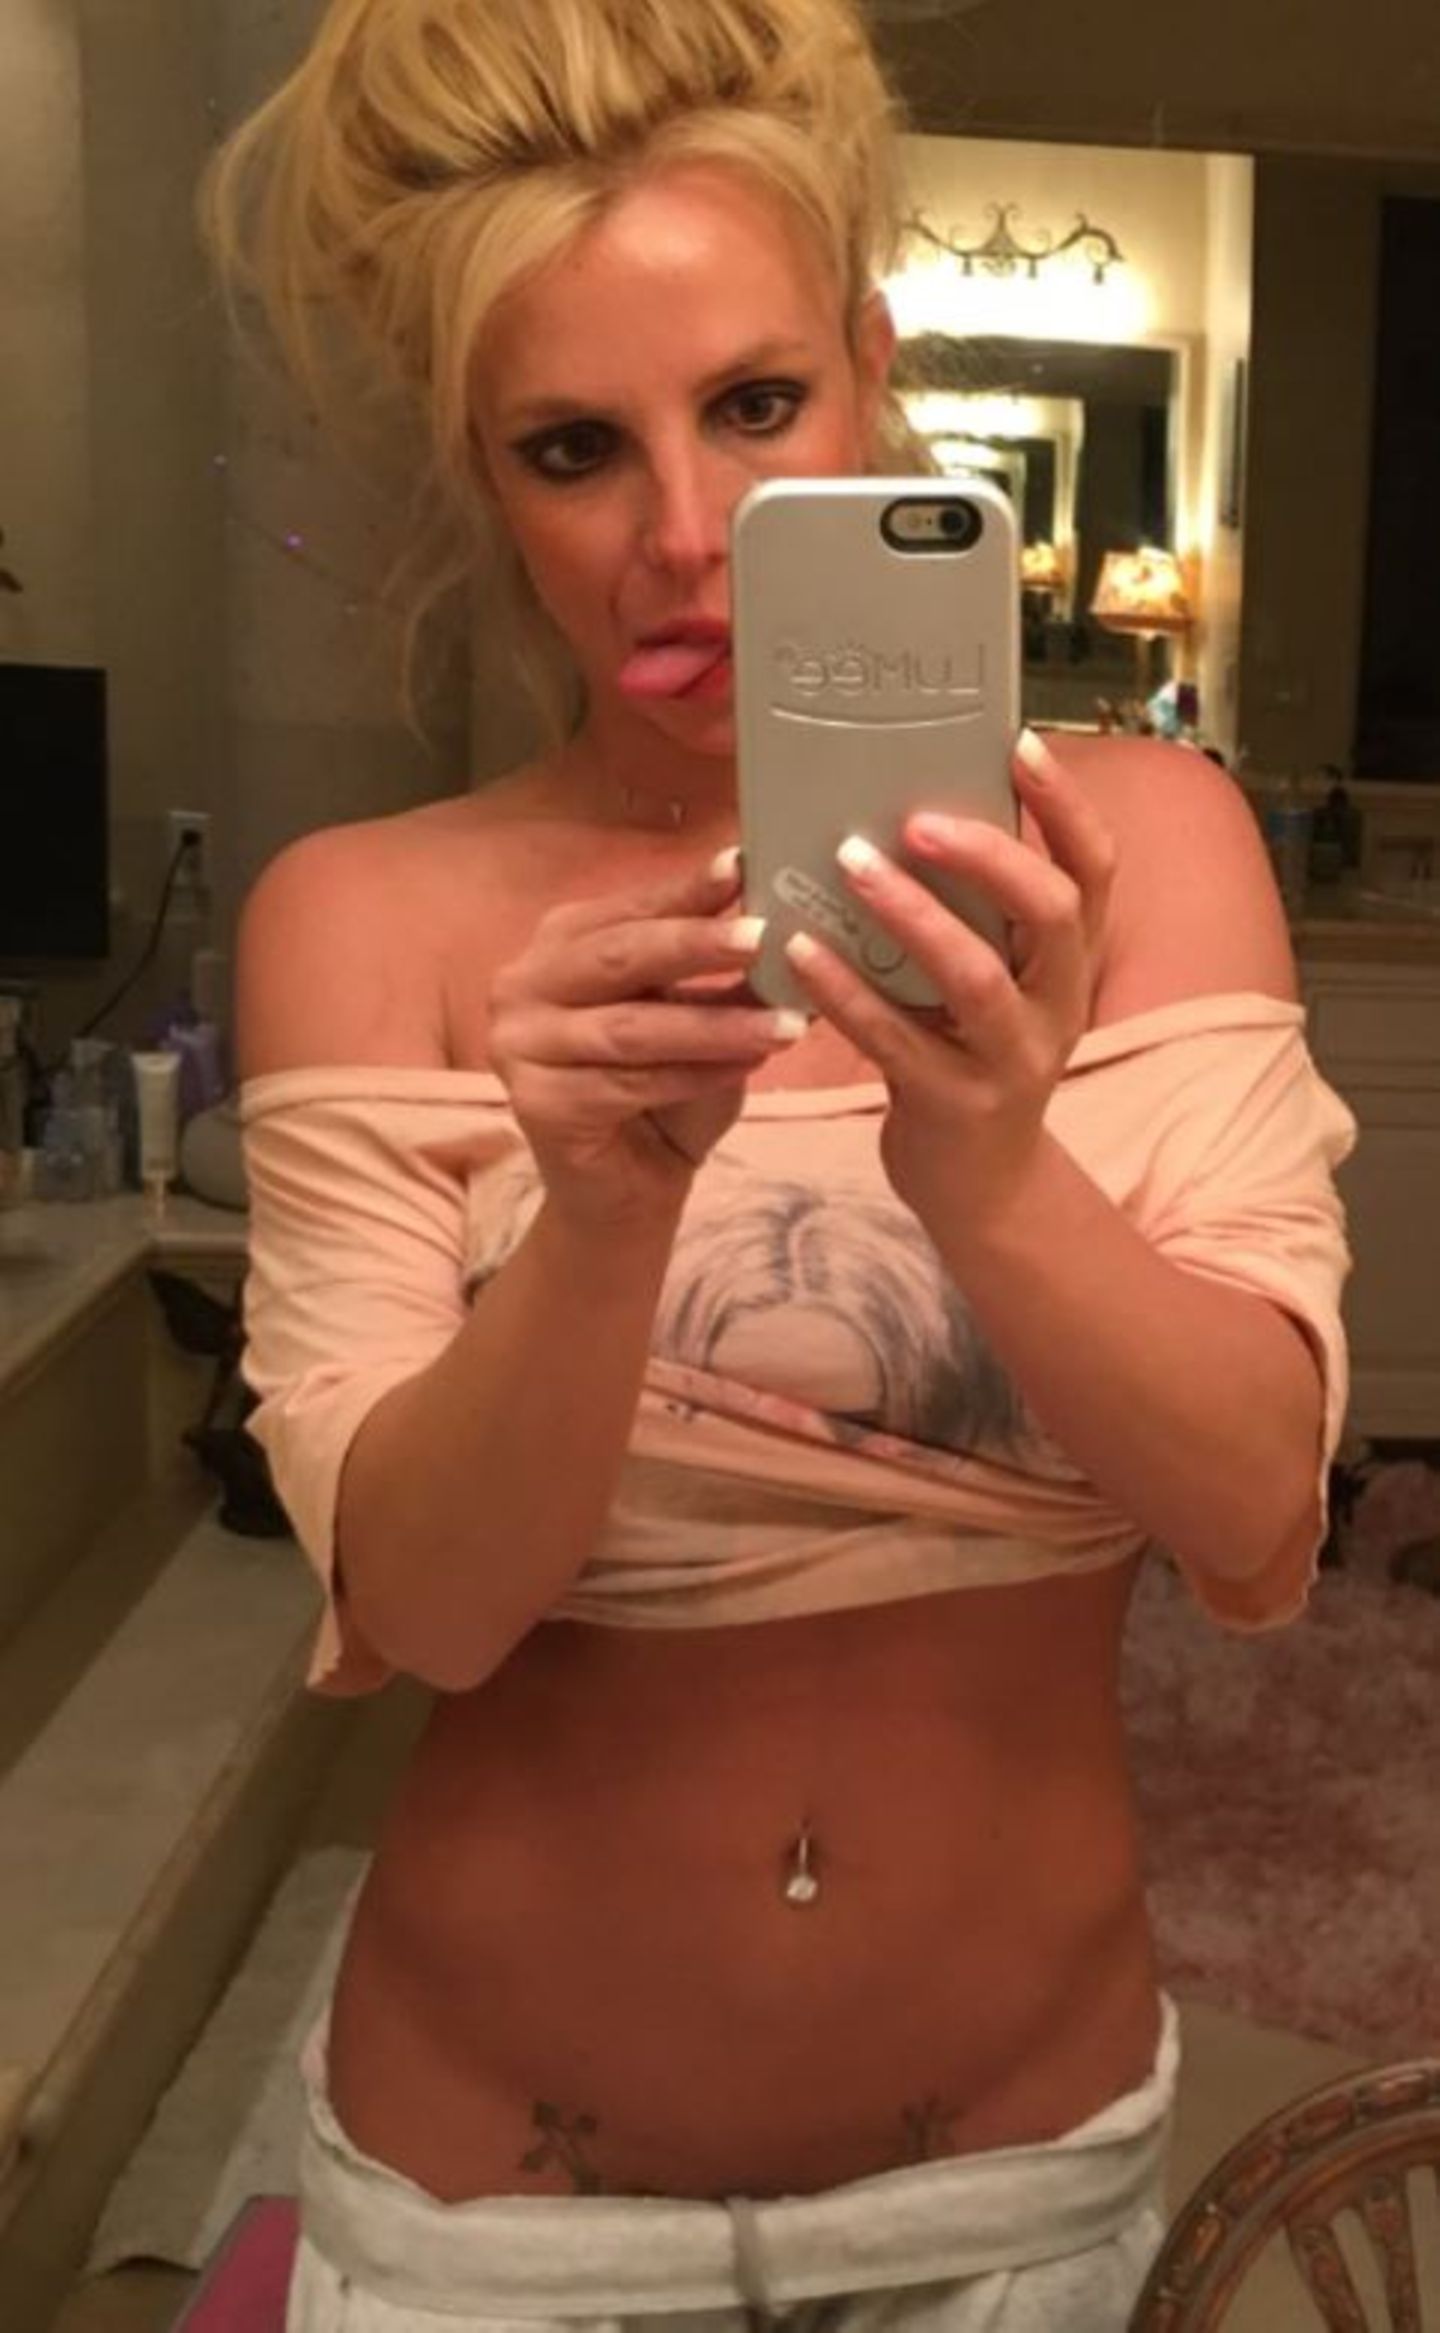 "Erstes Selfie seit langem", schreibt Pop-Sternchen Britney Spears unter dieses Bild, was sie bei Twitter postet. Herausgestreckte Zunge, Zottelfrisur und ein fehlender Fingernagel sind nur der Anfang. Ihre Jogginghose hat sie so weit heruntergezogen, dass zwei Tattoos in ihrer Leistengegend zum Vorschein kommen - bei Männern kann das ja wirklich sexy aussehen, bei Frauen leider nicht. Das macht selbst der Waschbrettbauch nicht besser....